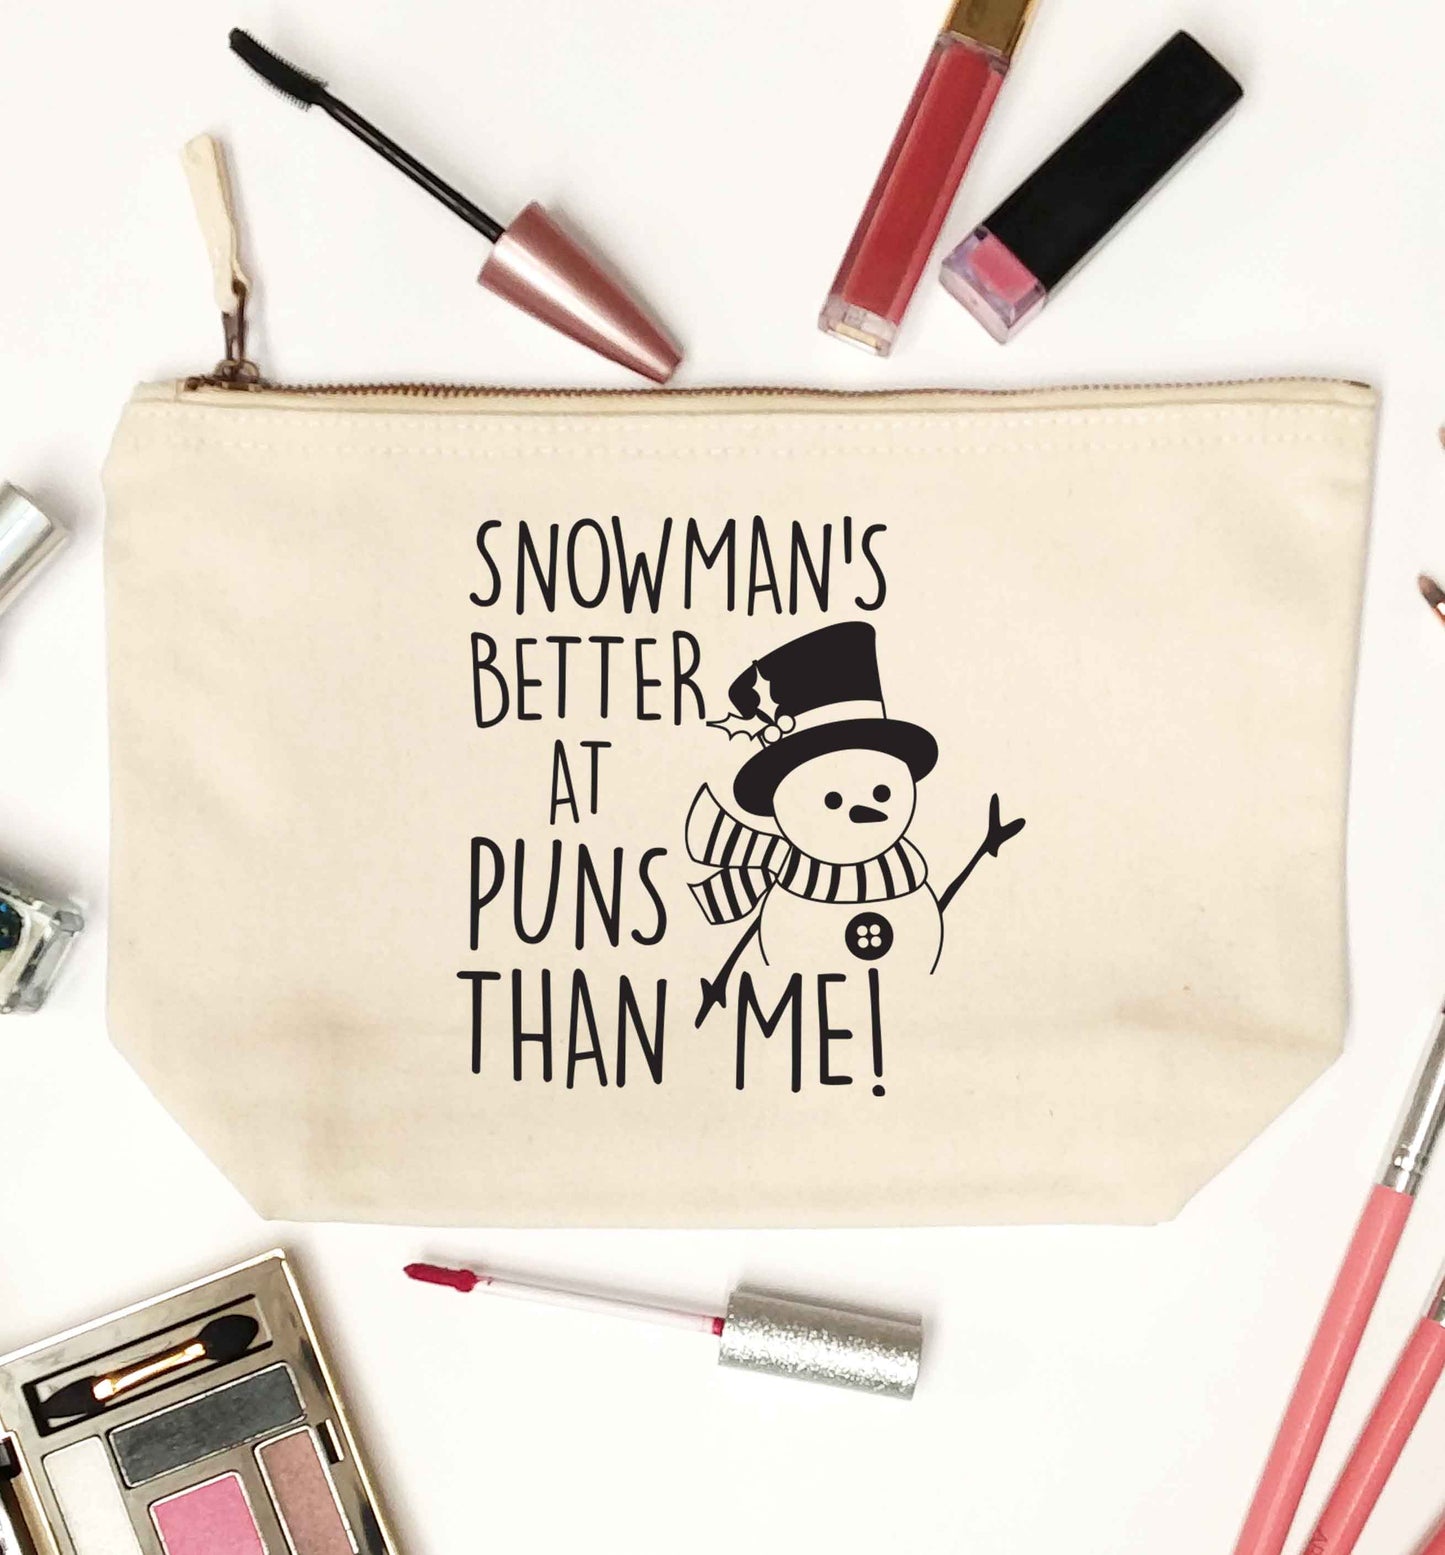 Snowman's Puns Me natural makeup bag